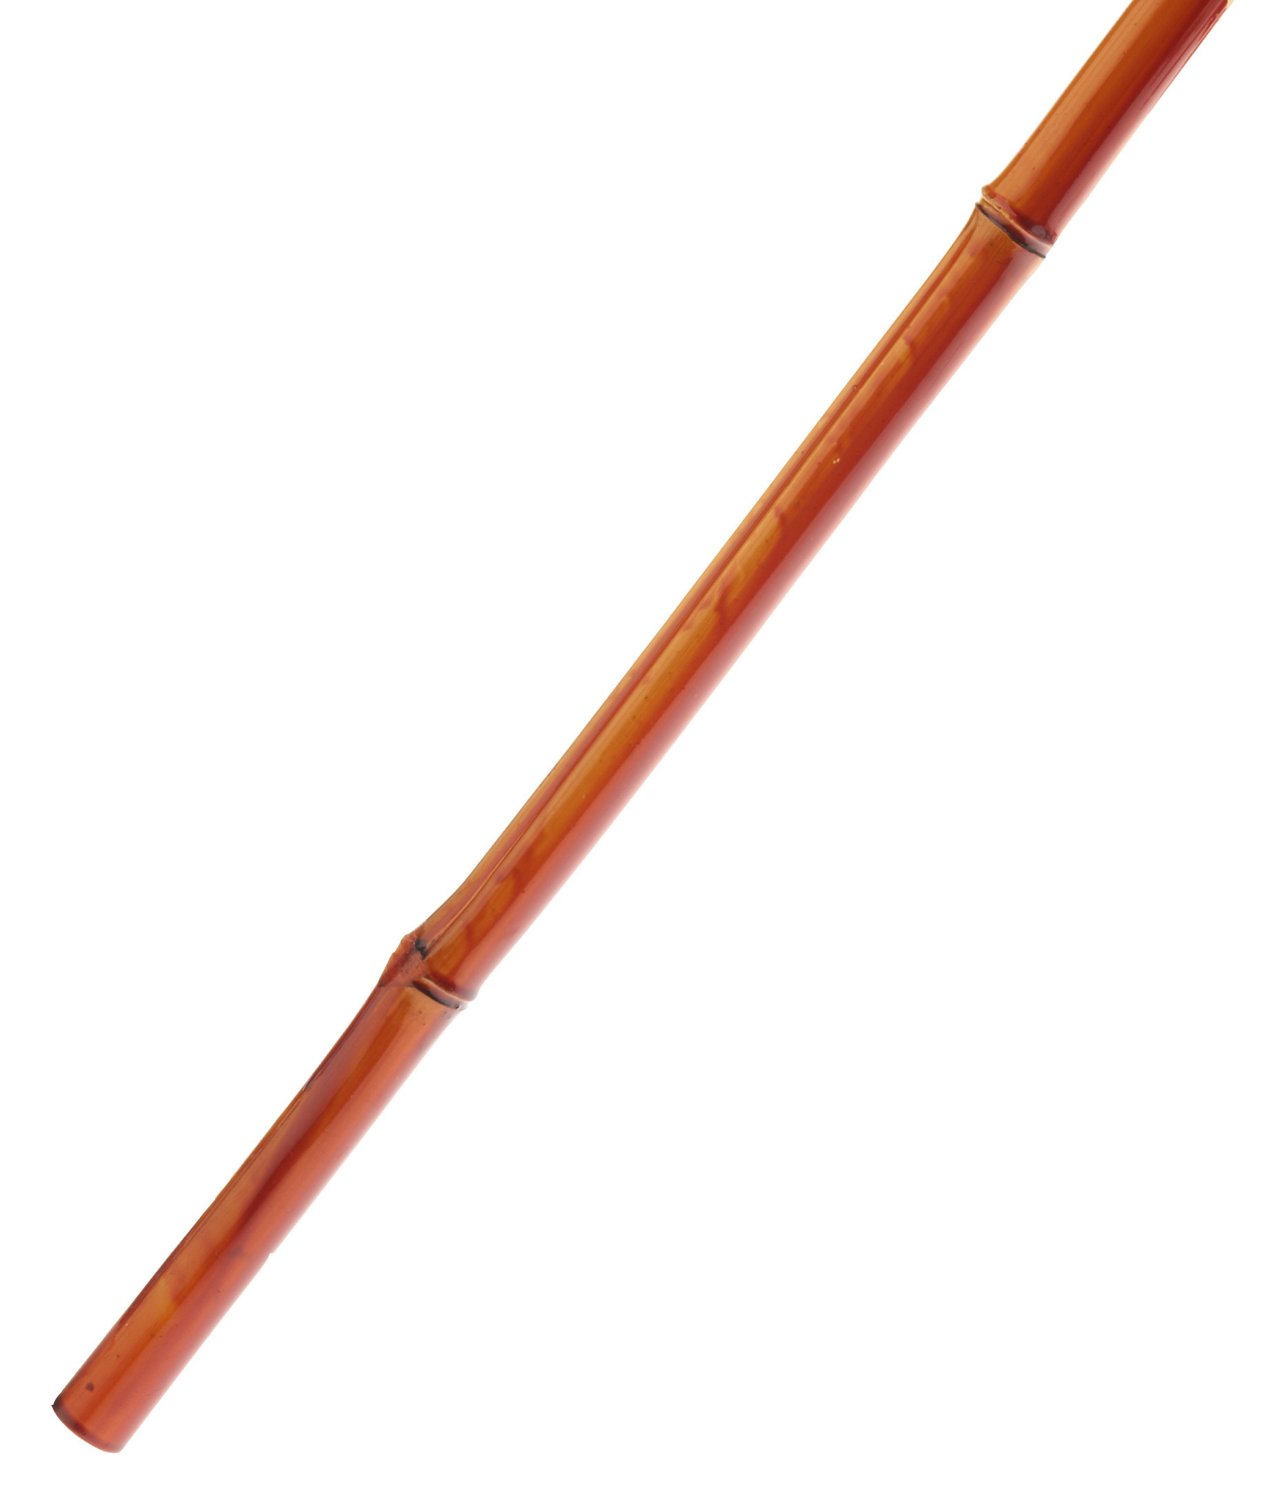 B 'n' M Rigged Bamboo 10' Panfish Rod